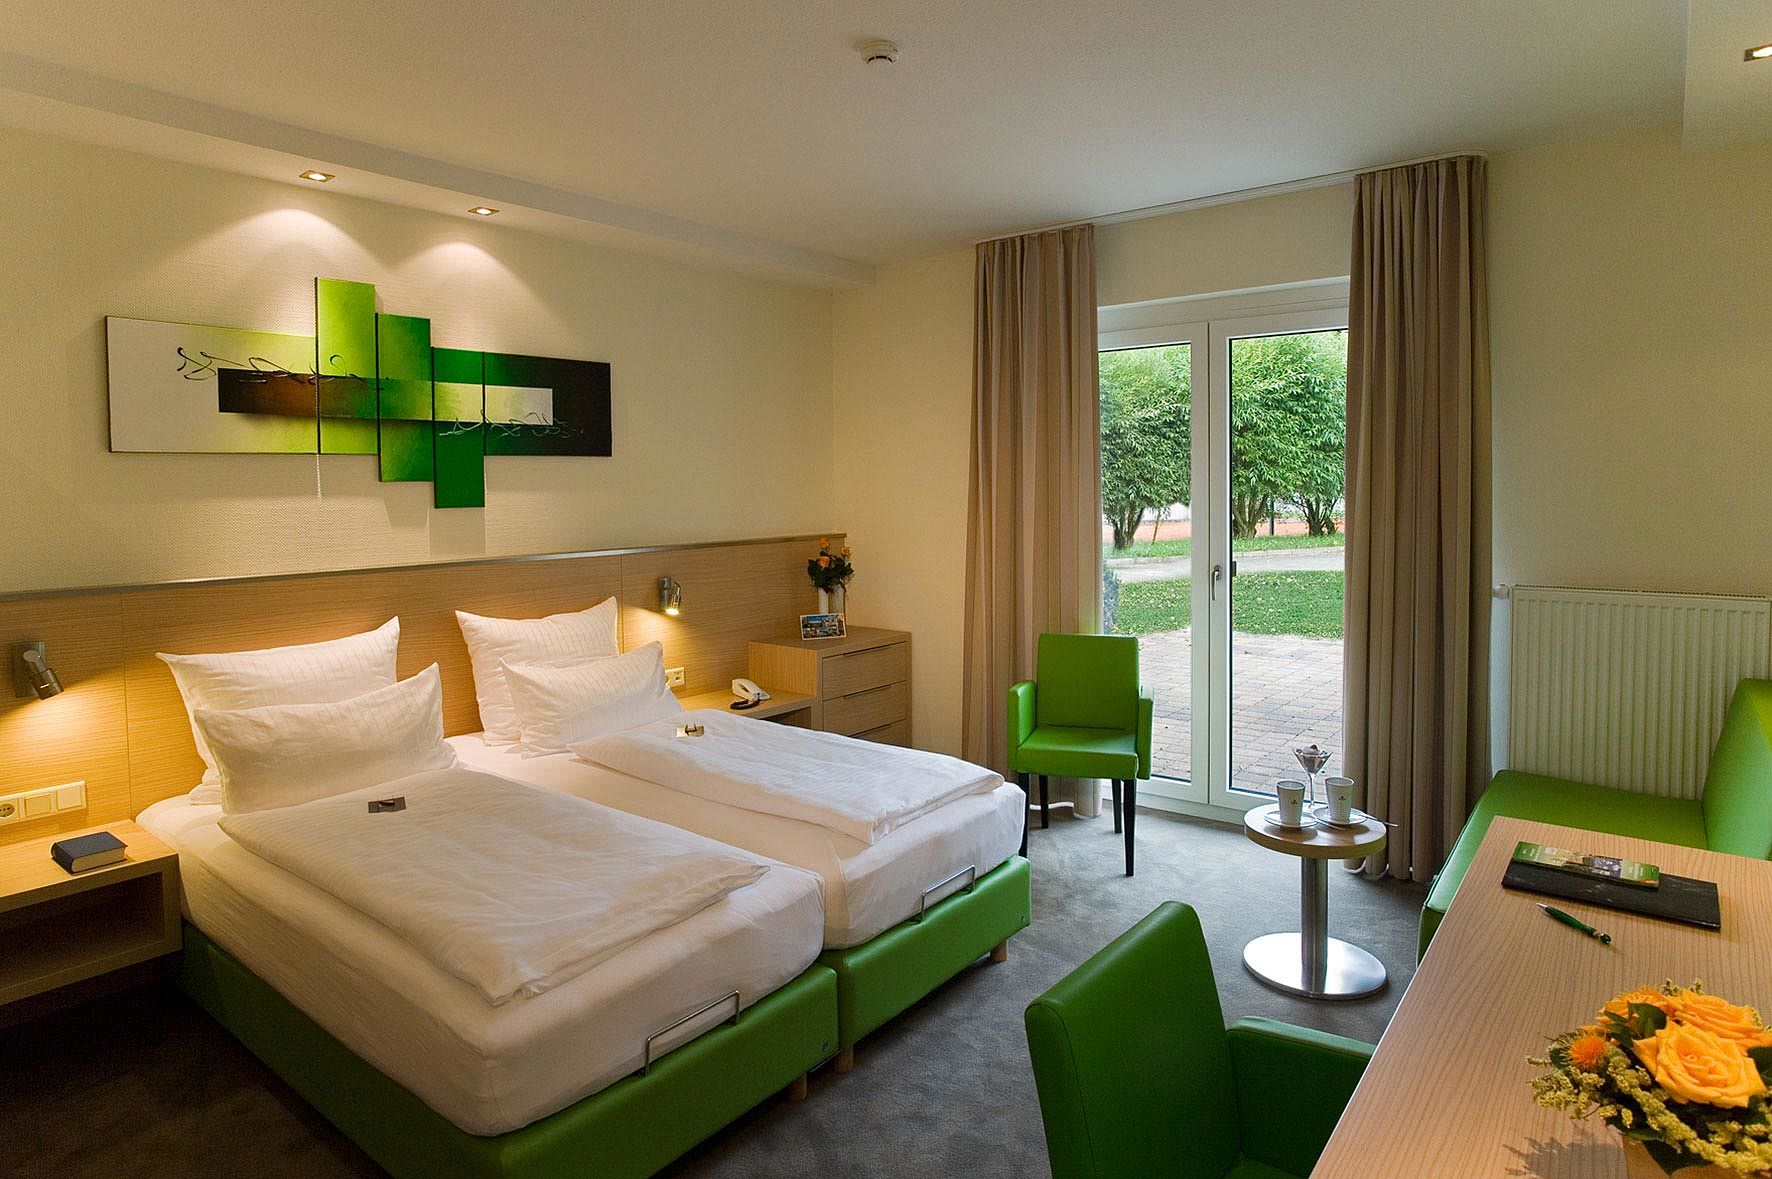 Hotelzimmer in der Sächsischen Schweiz buchen